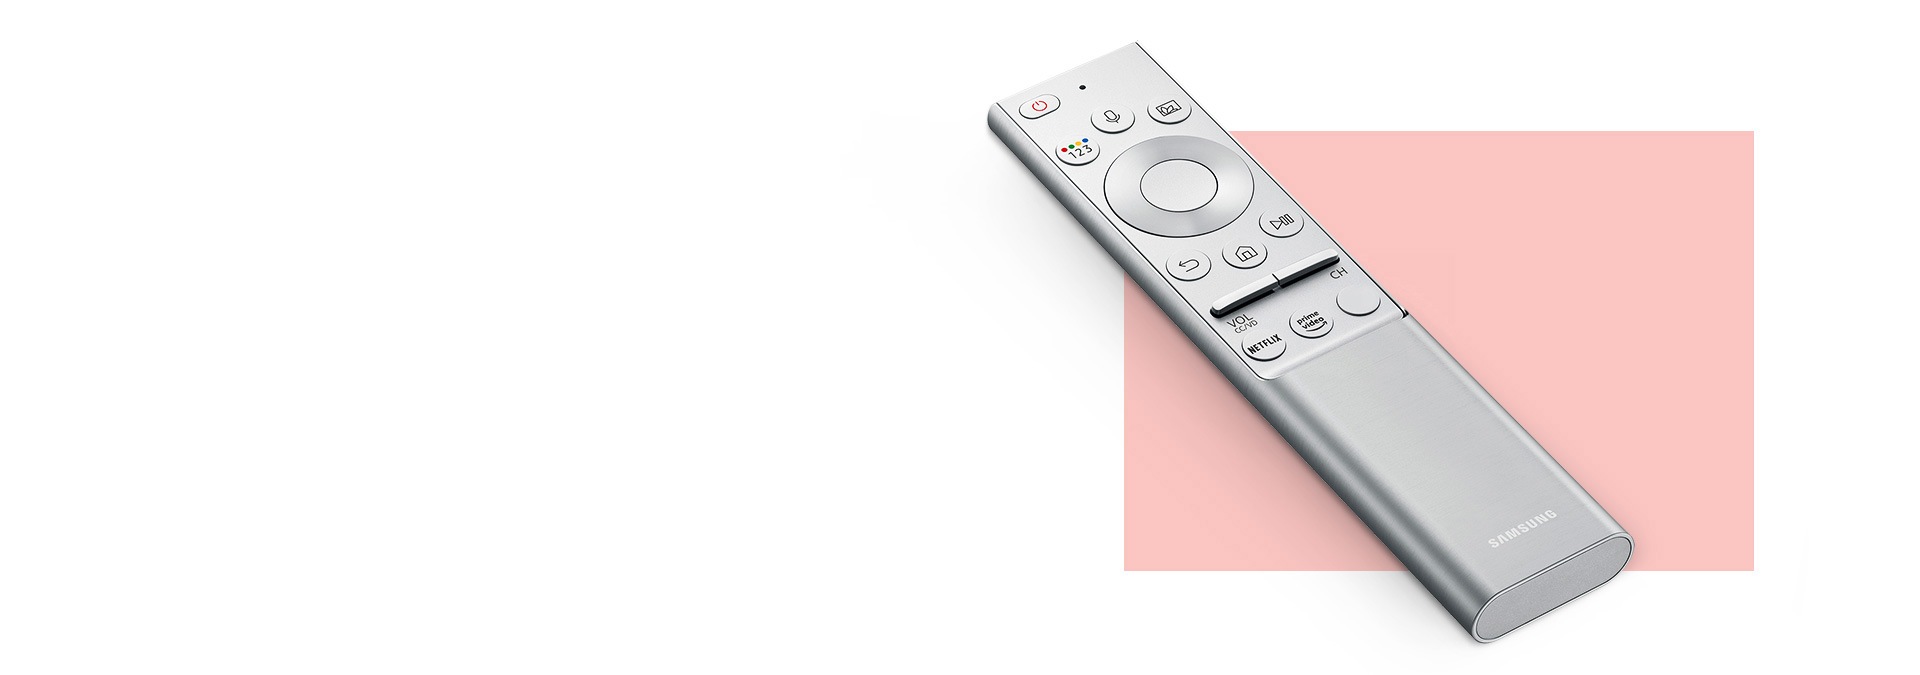 Una imagen de un Samsung One Remote, el control remoto universal para todo.